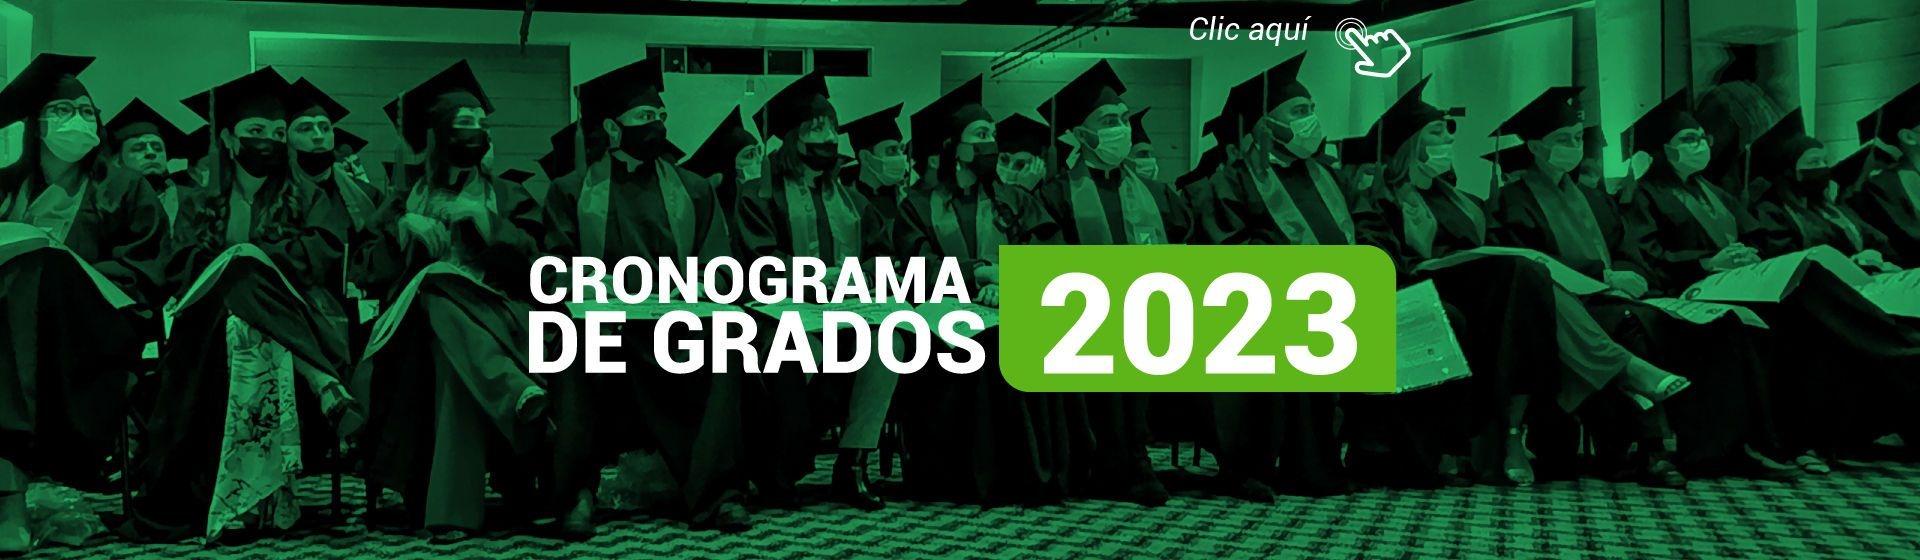 Cronograma De Grados 2023 - Universidad La Gran Colombia - Armenia